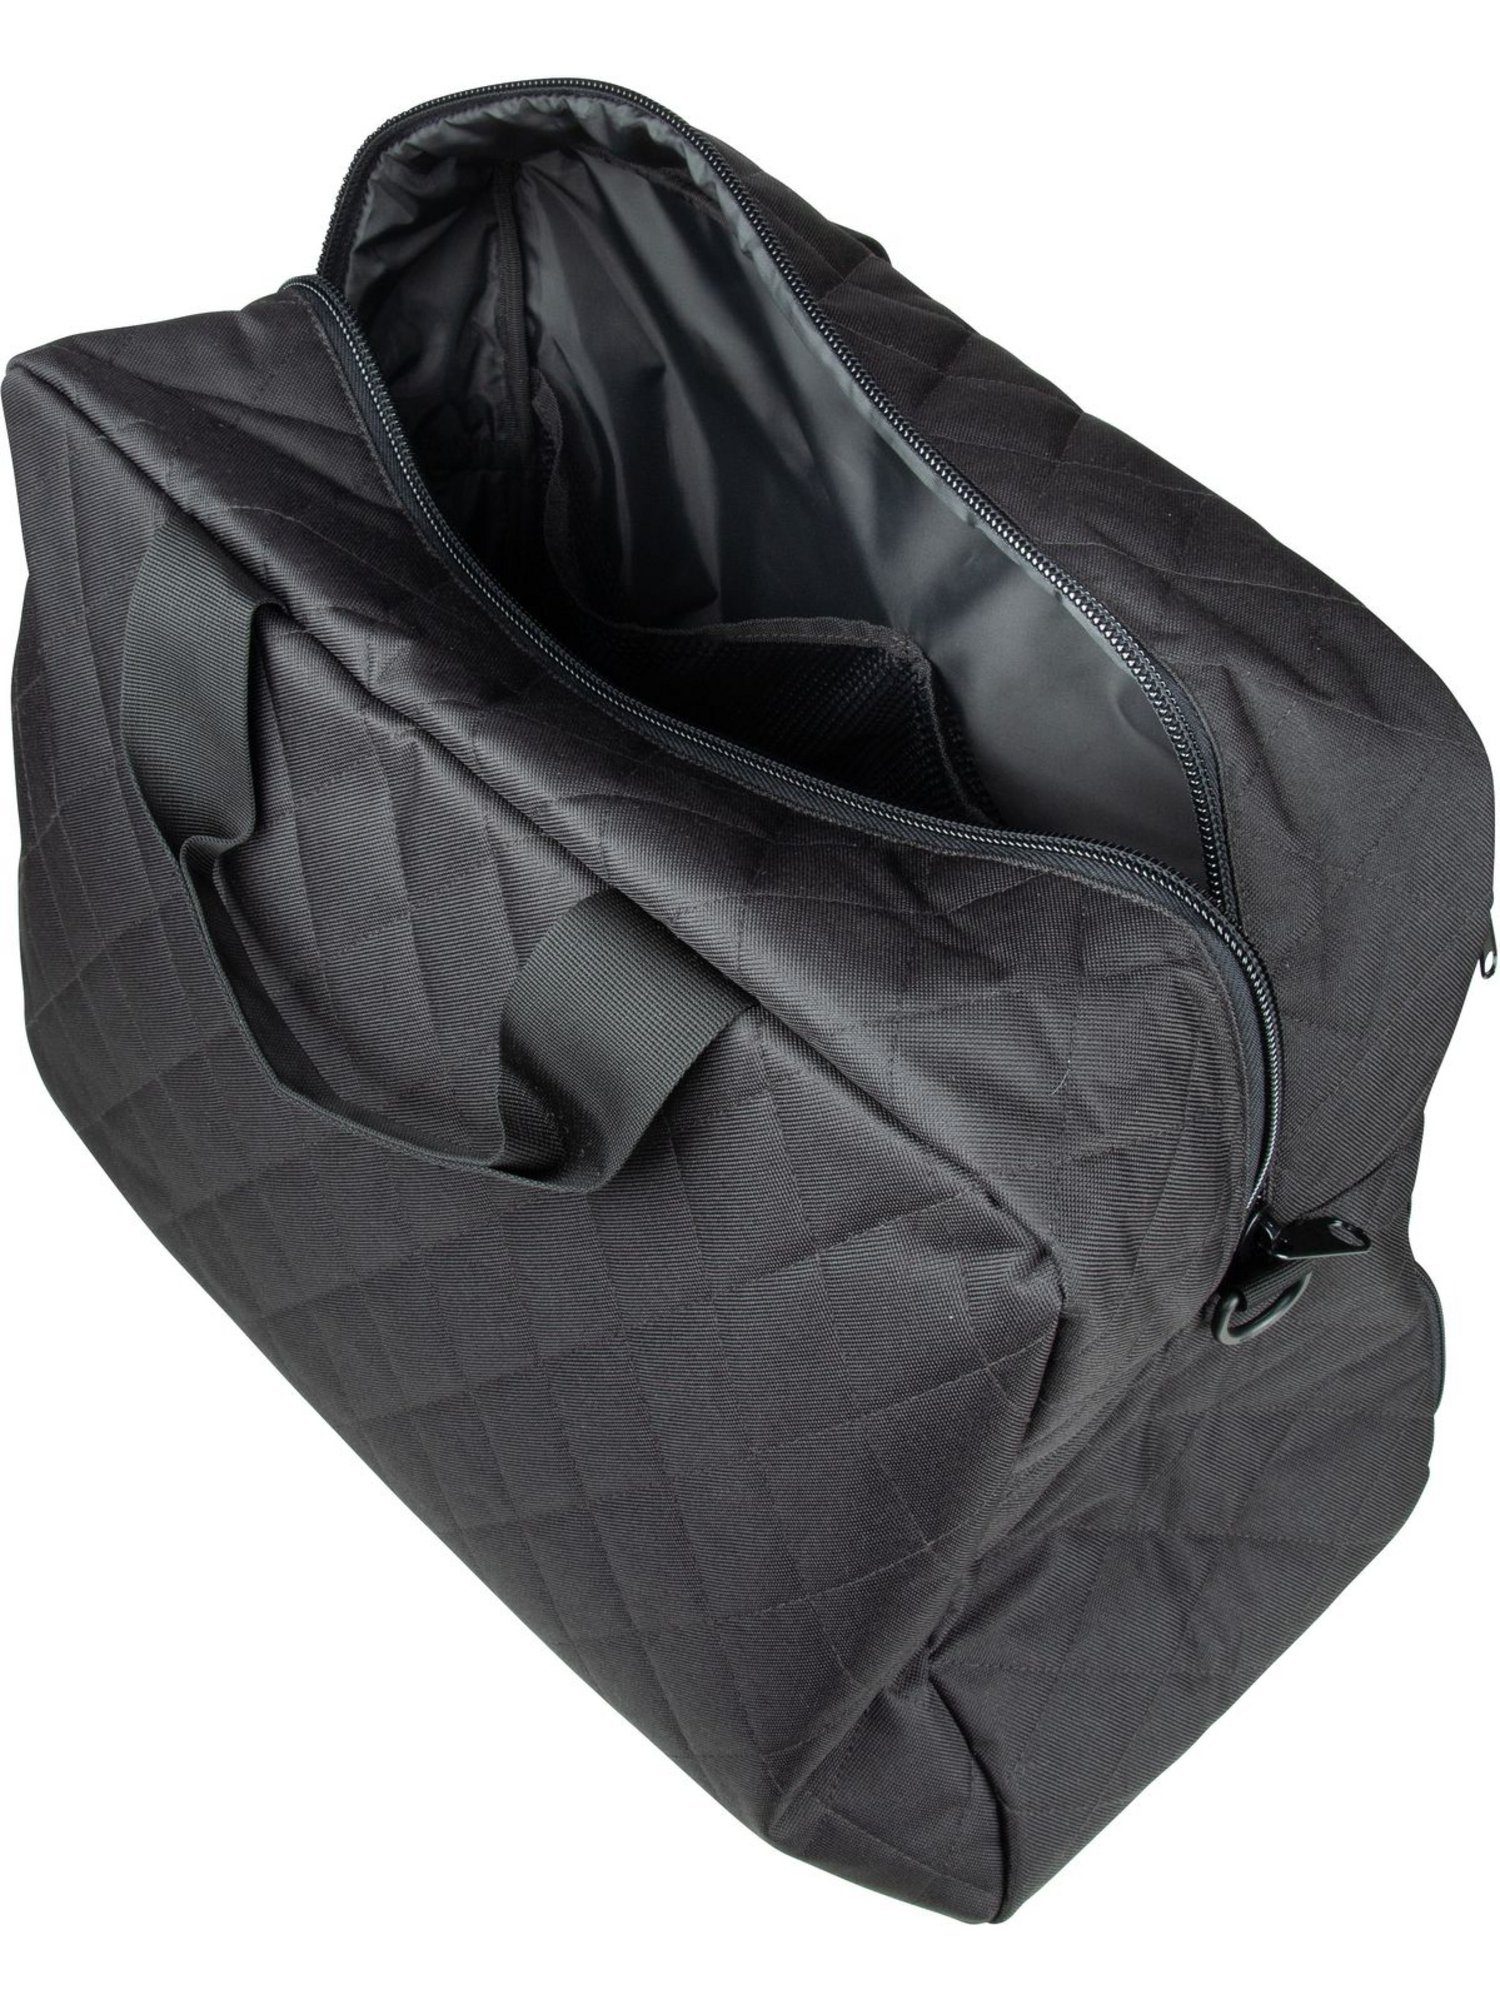 REISENTHEL® Weekender Rhombus Black duffelbag M